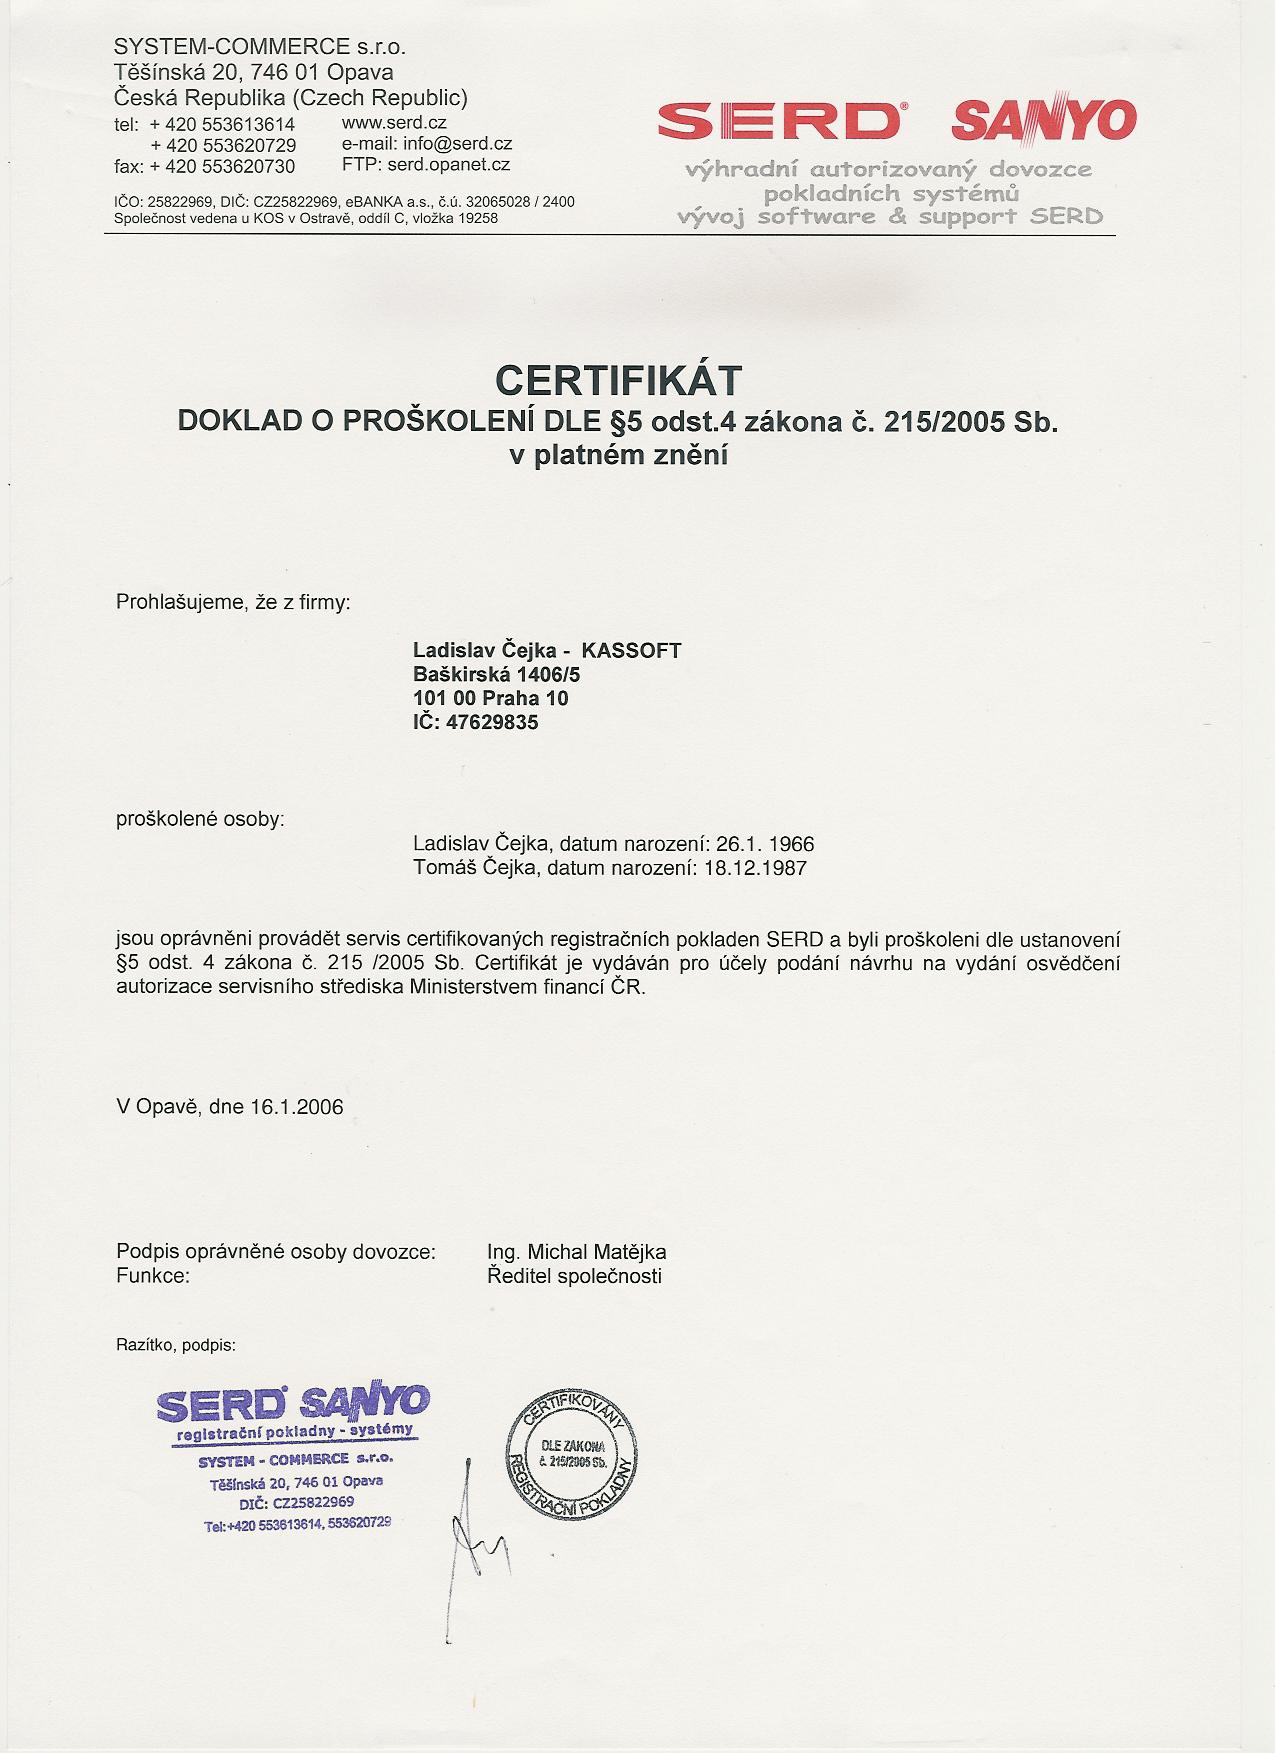 Certifikát k pokladnám SERD